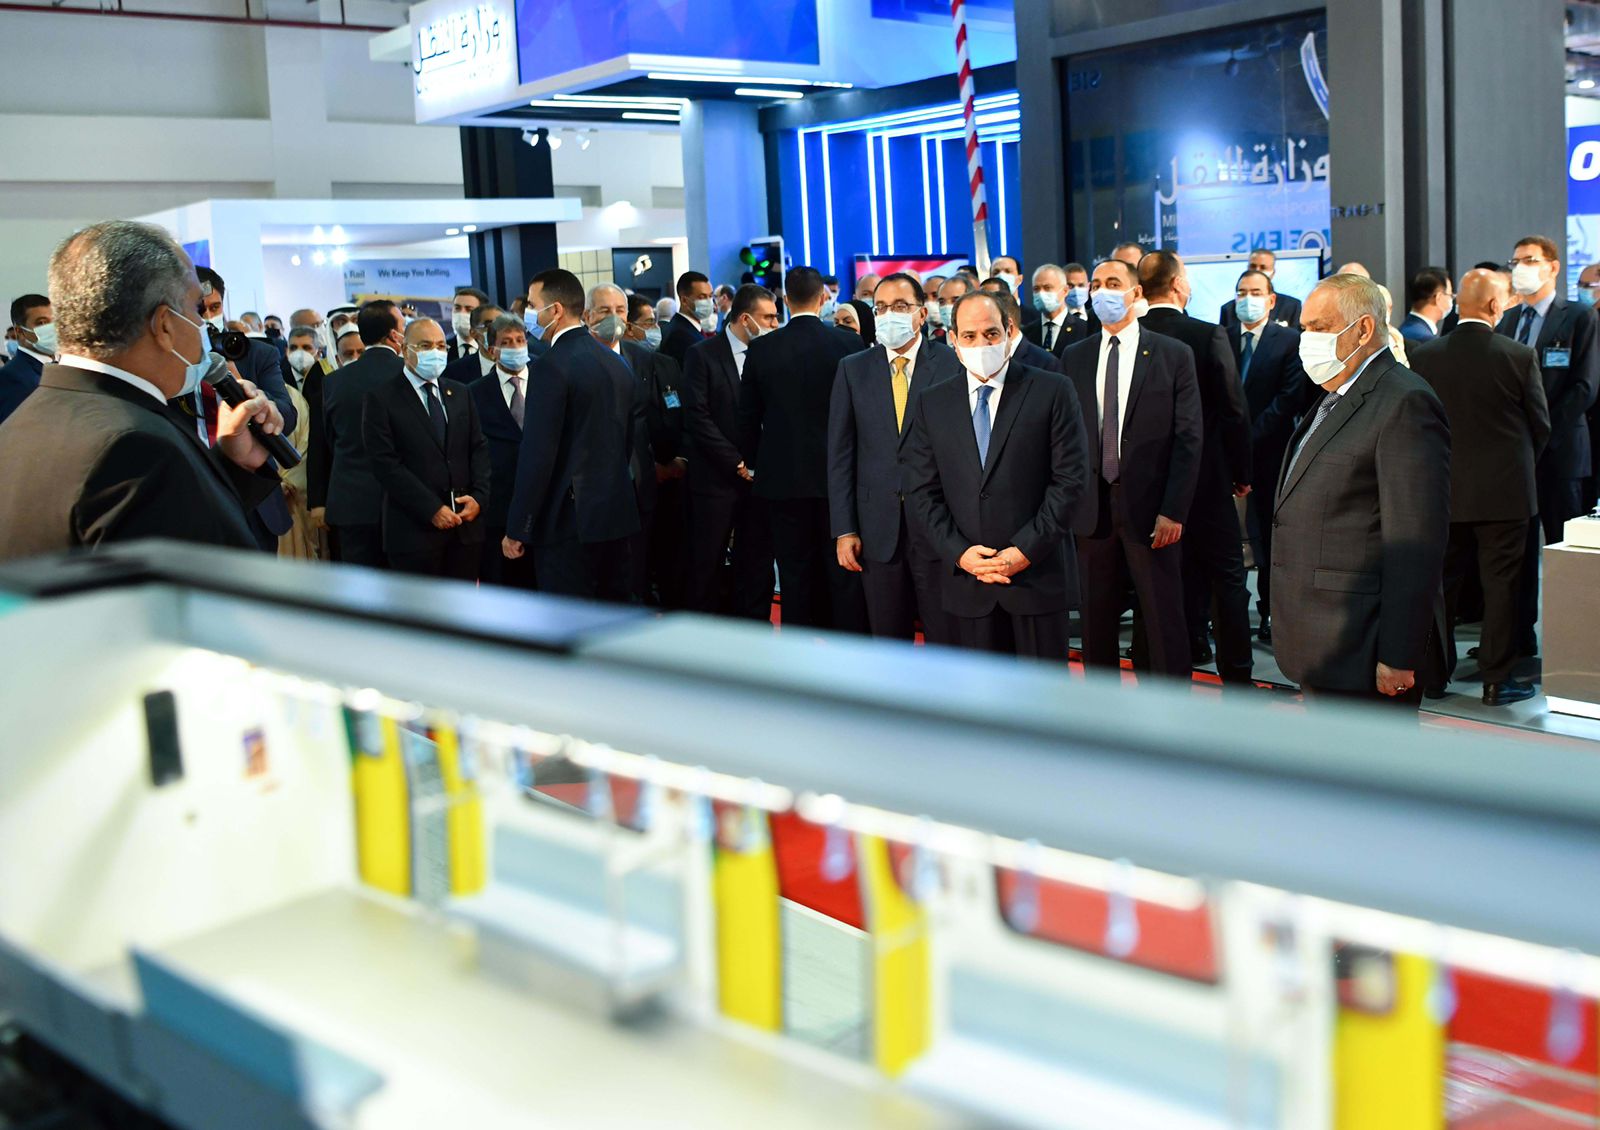  افتتاح الرئيس السيسي معرض ومؤتمر النقل الذكي واللوجيستيات